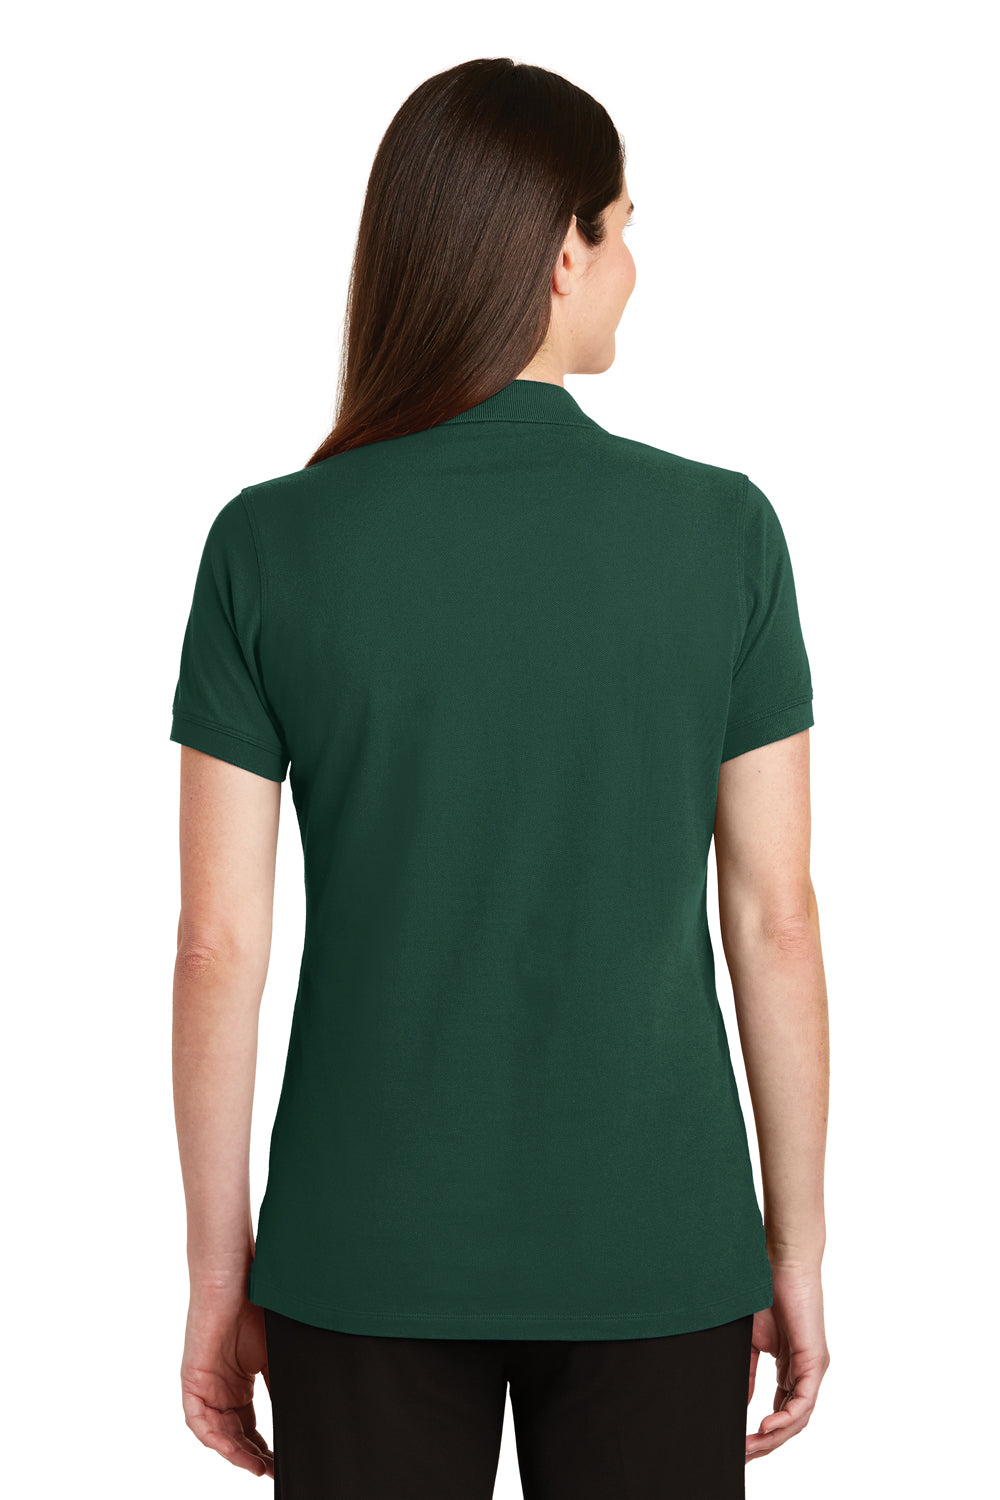 Port Authority LK8000 Womens Wrinkle Resistant Short Sleeve Polo Shirt Glen Green Back